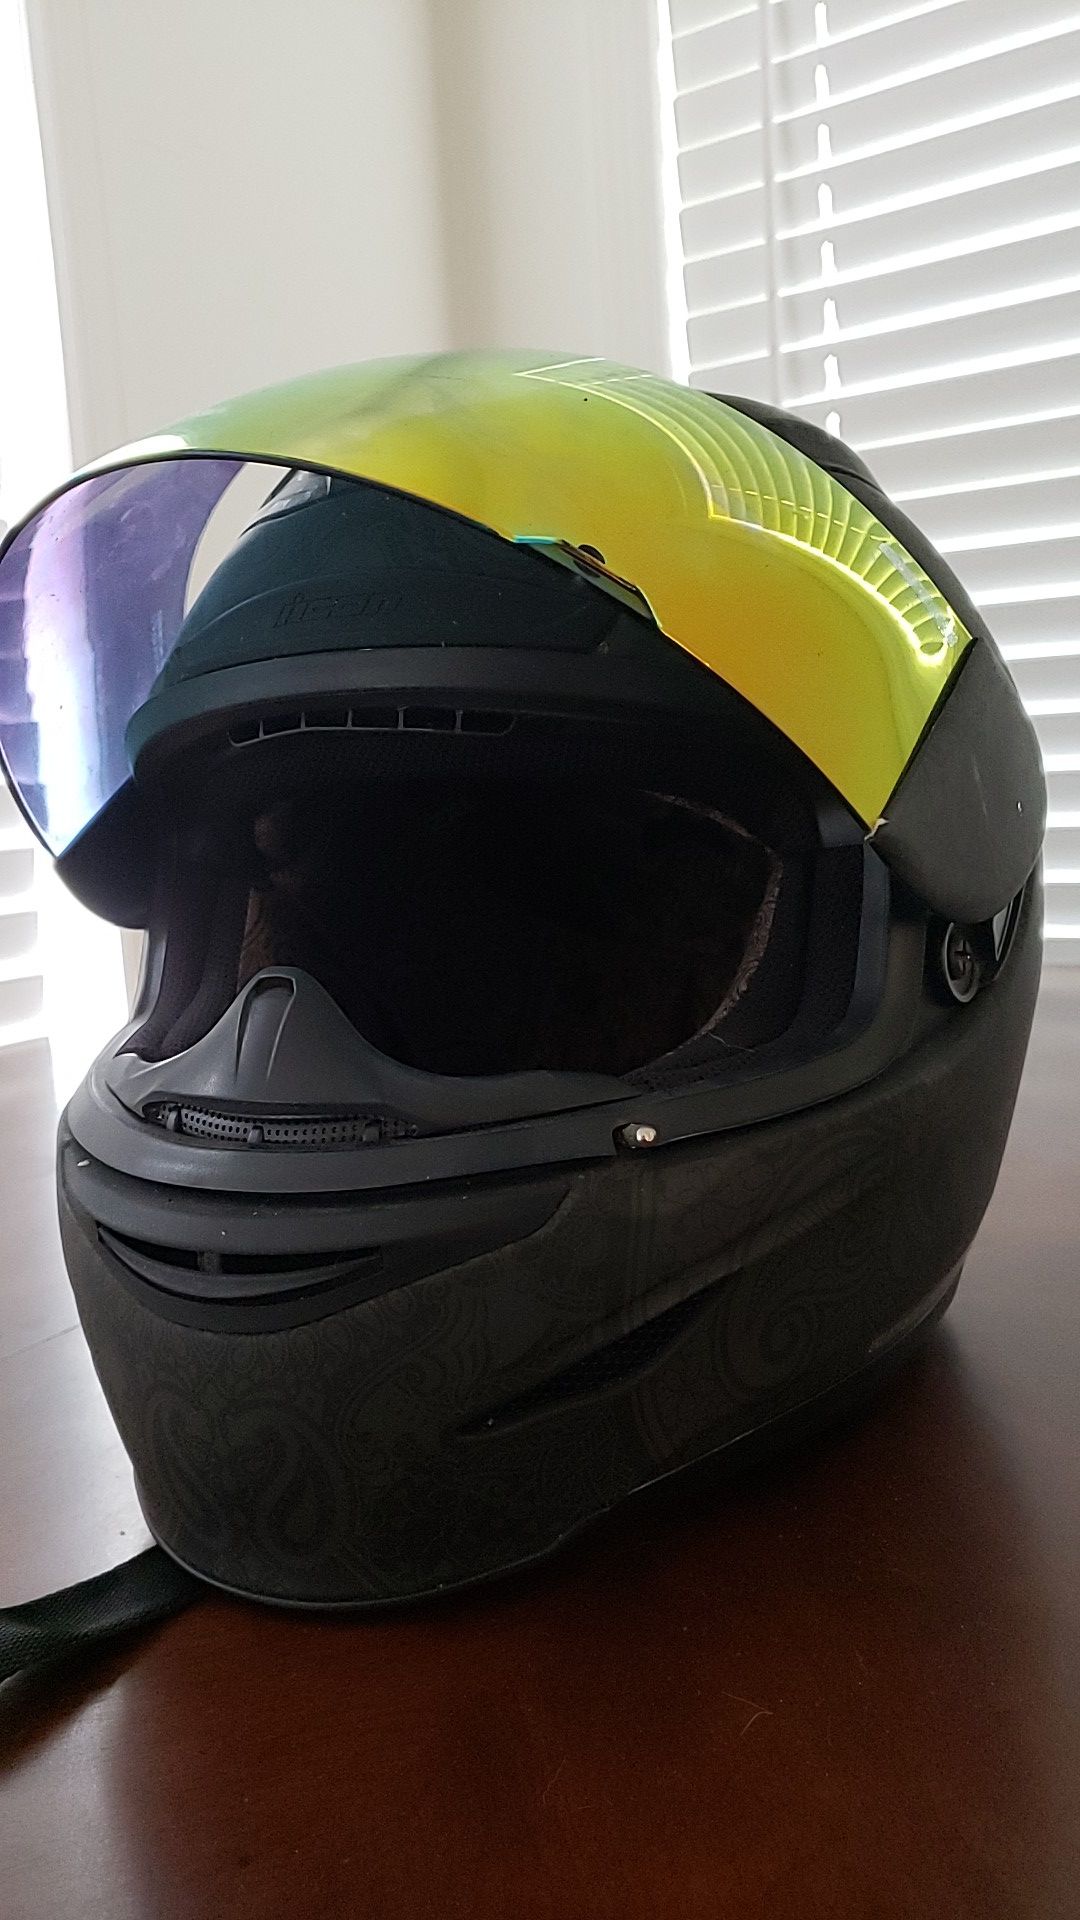 Icon Airmada Motorcycle Helmet